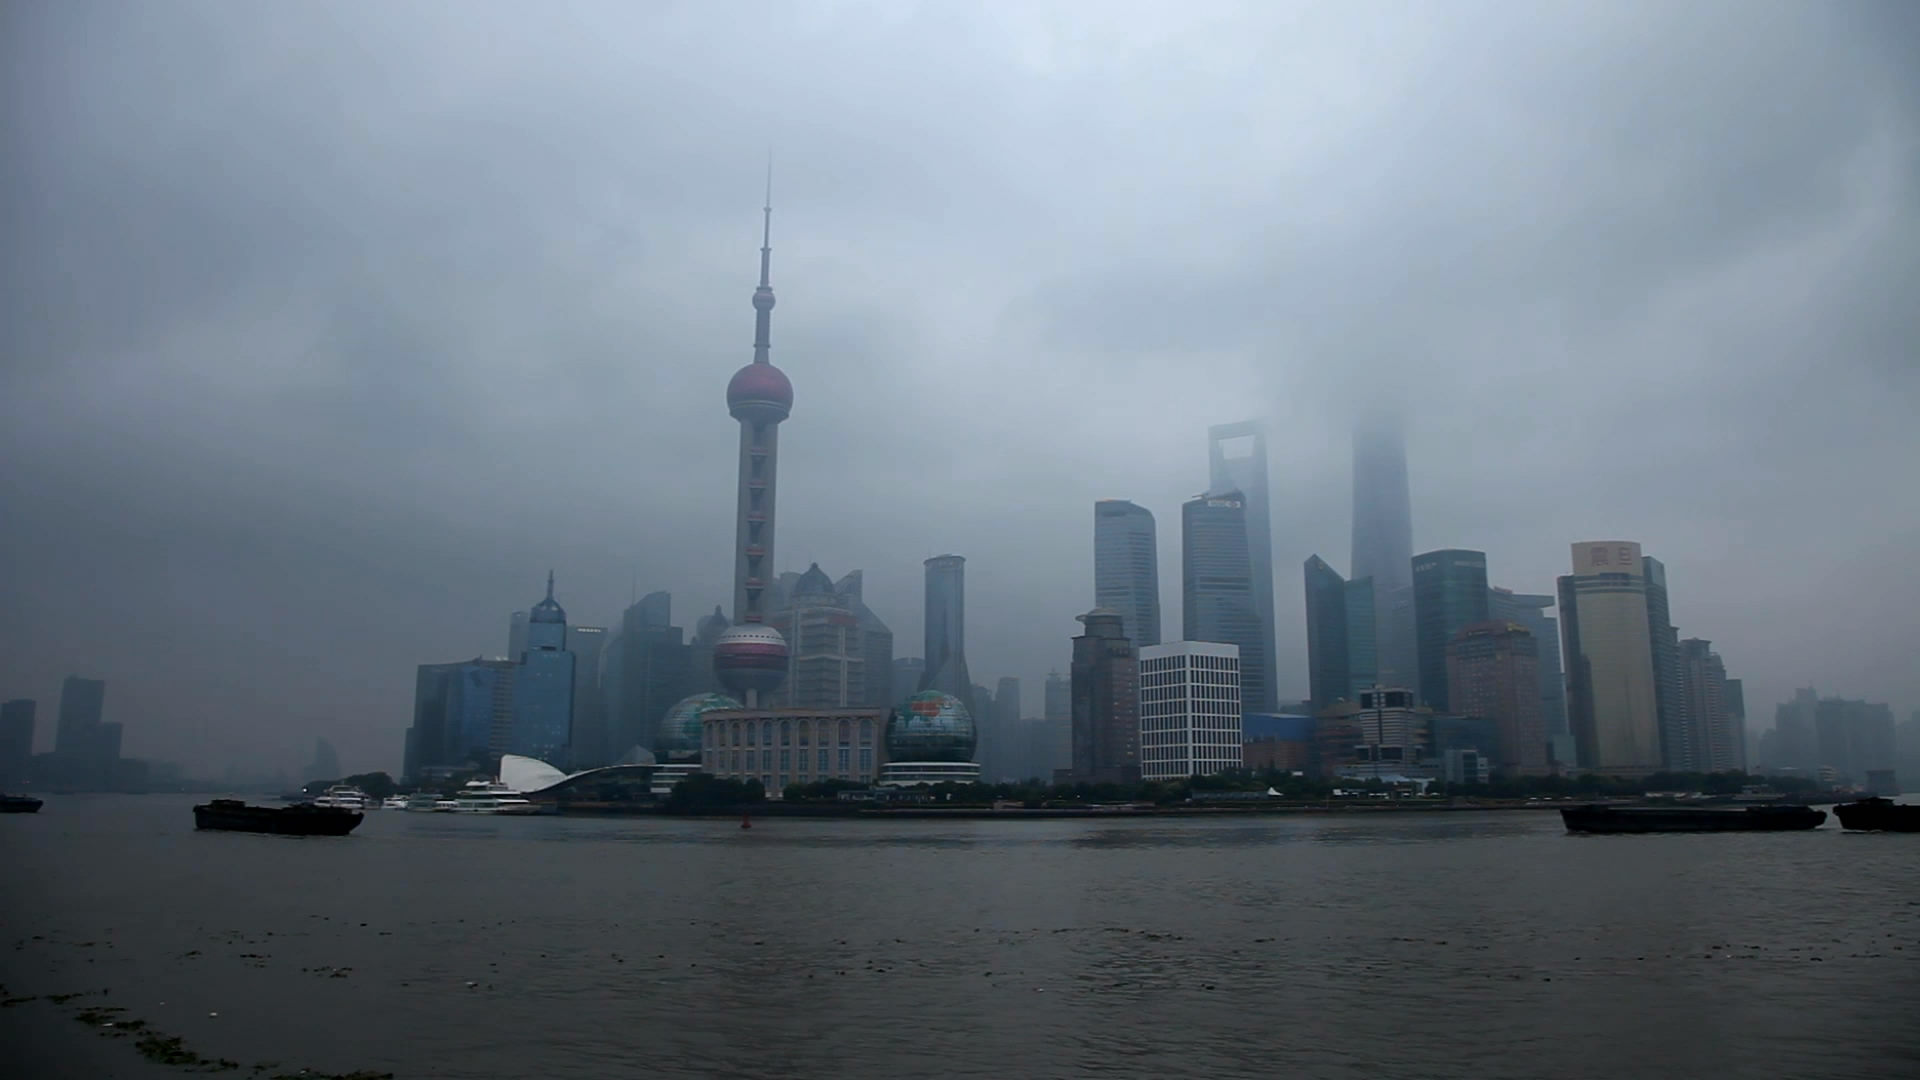 Huangpu River cruiseschip time-lapse fotografie